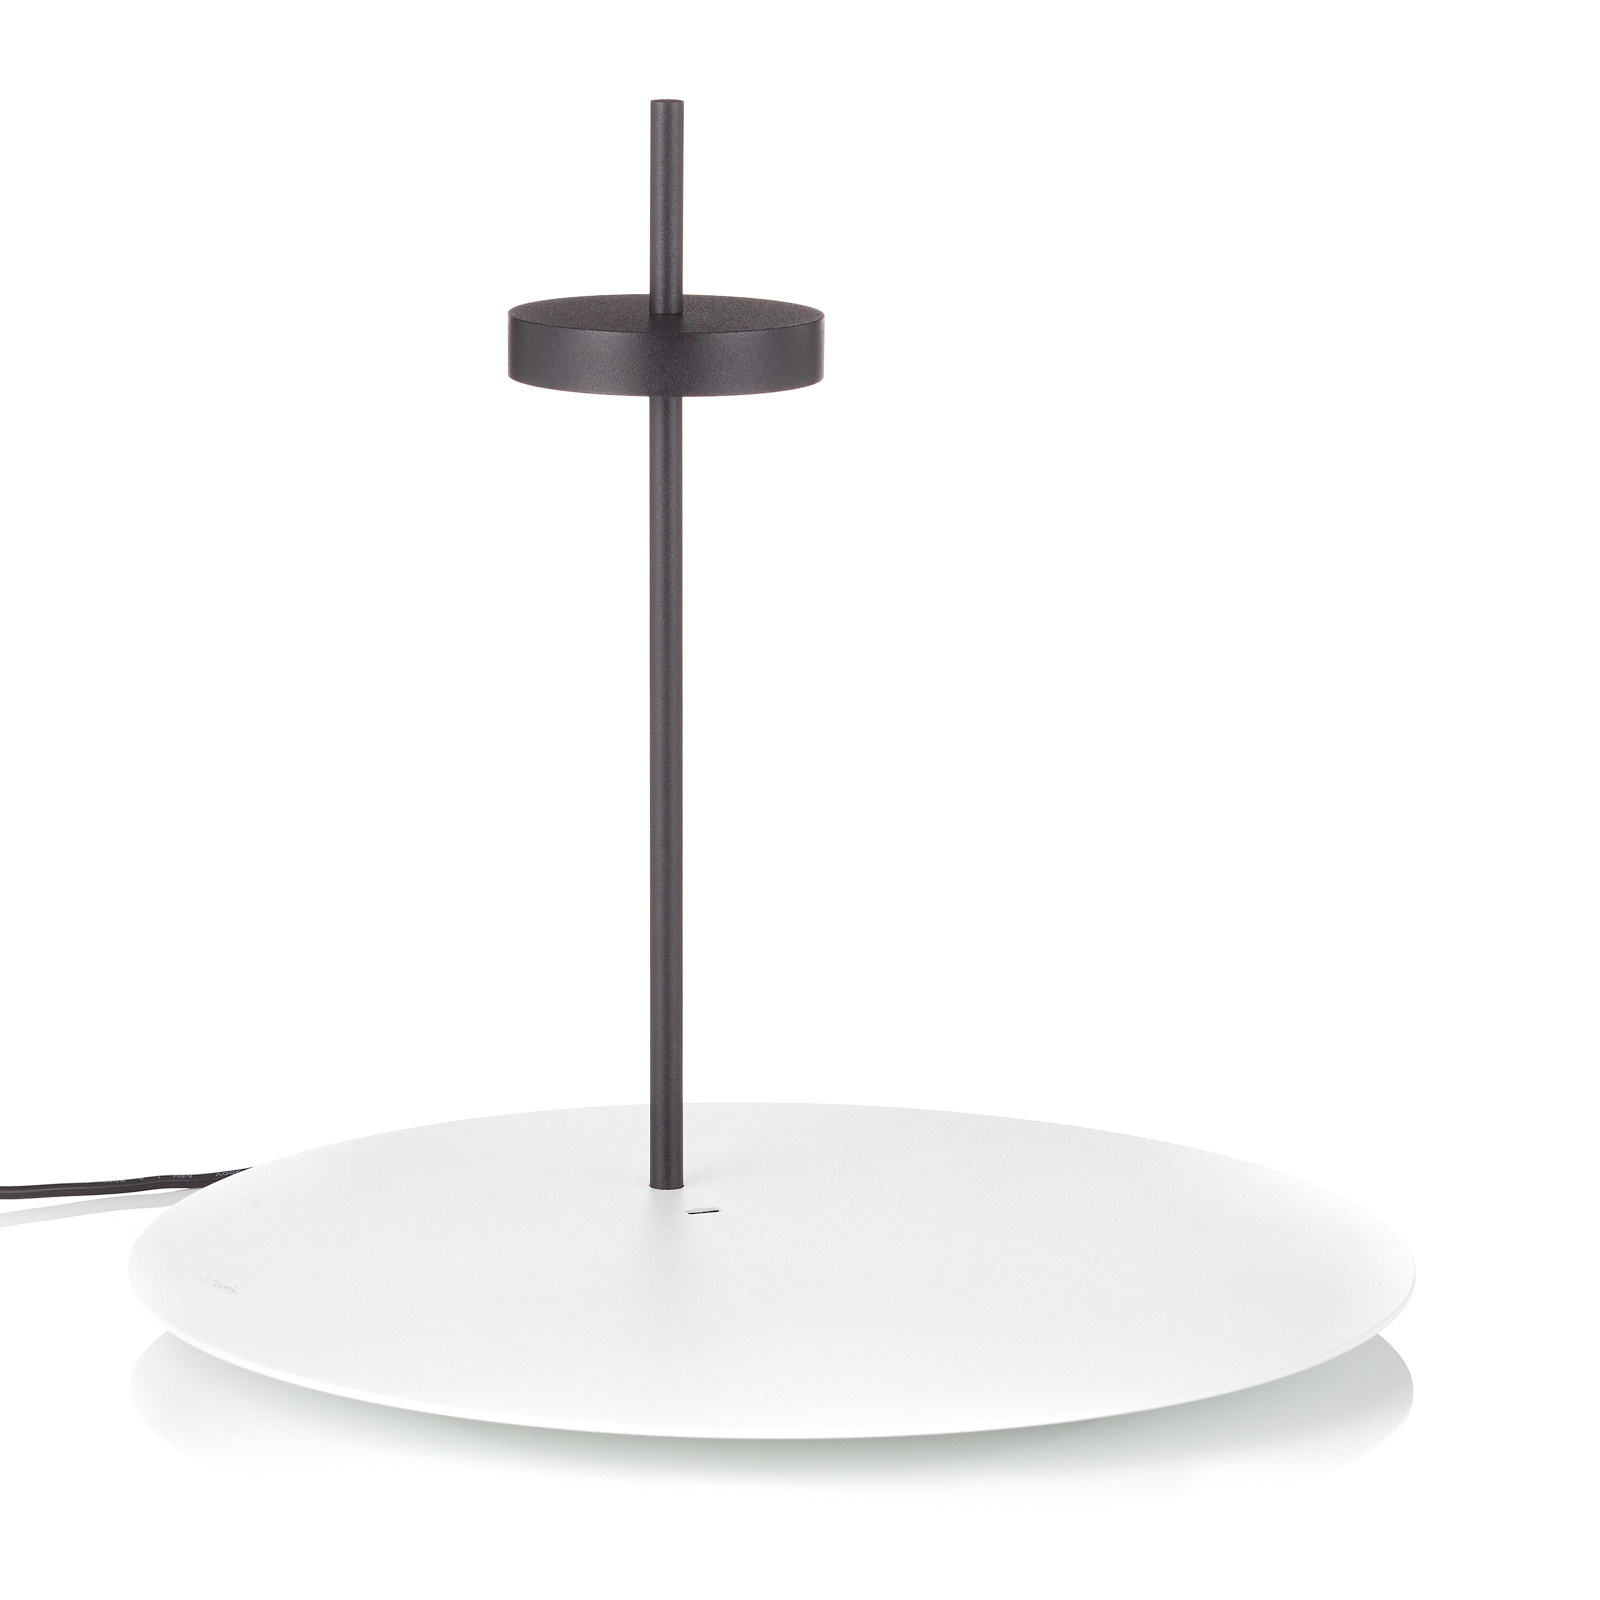 Scave LED table lamp sensor dim base white